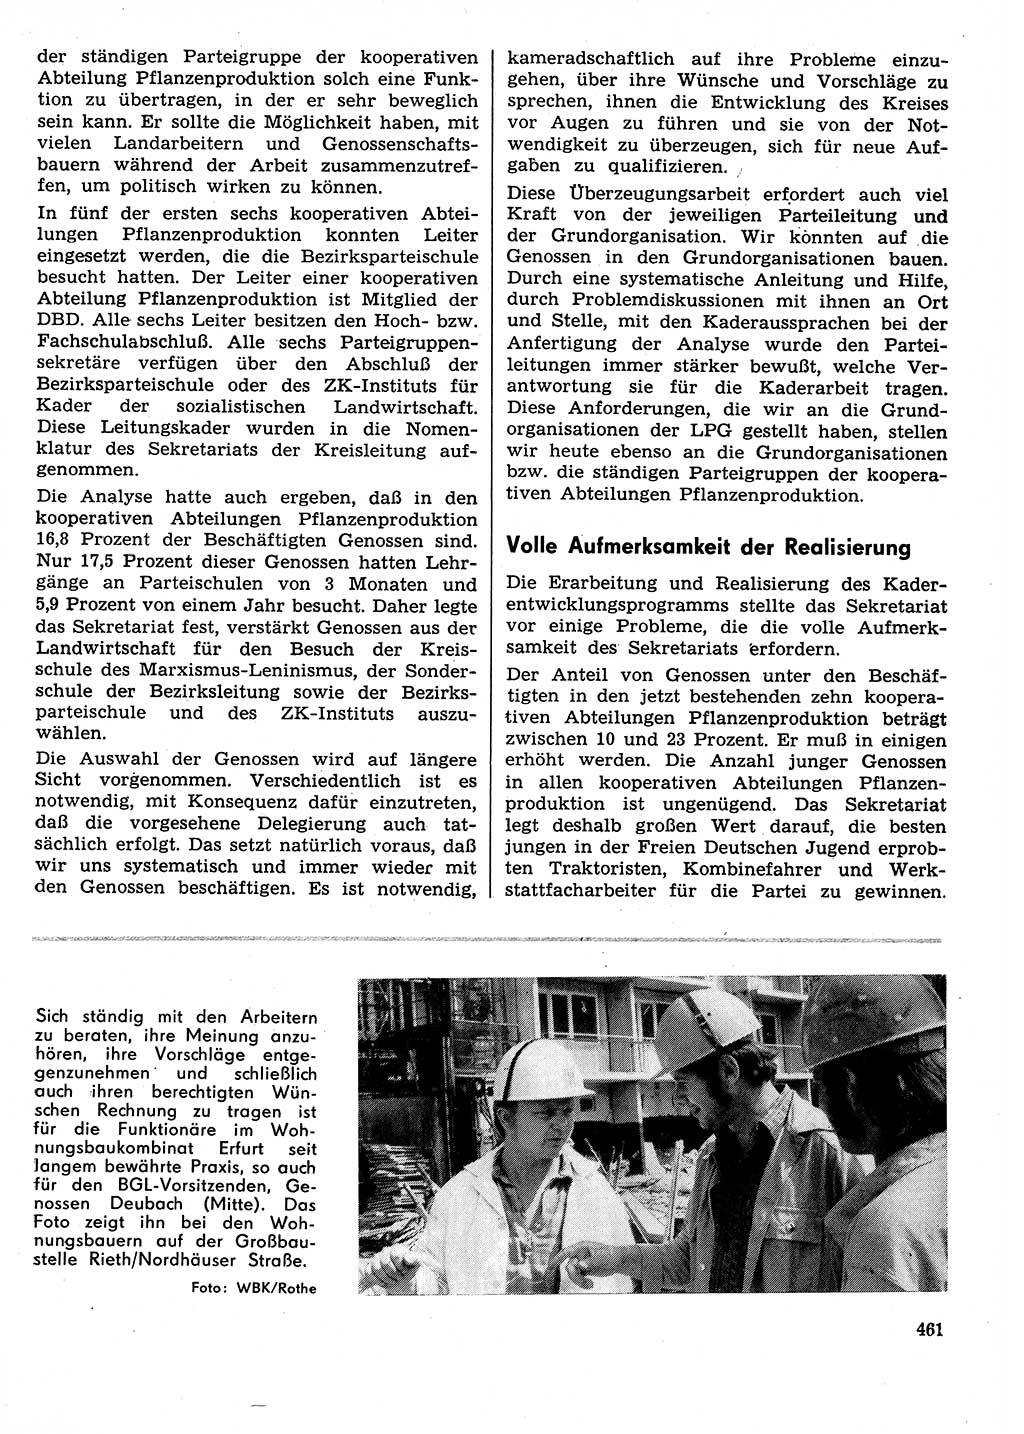 Neuer Weg (NW), Organ des Zentralkomitees (ZK) der SED (Sozialistische Einheitspartei Deutschlands) für Fragen des Parteilebens, 29. Jahrgang [Deutsche Demokratische Republik (DDR)] 1974, Seite 461 (NW ZK SED DDR 1974, S. 461)